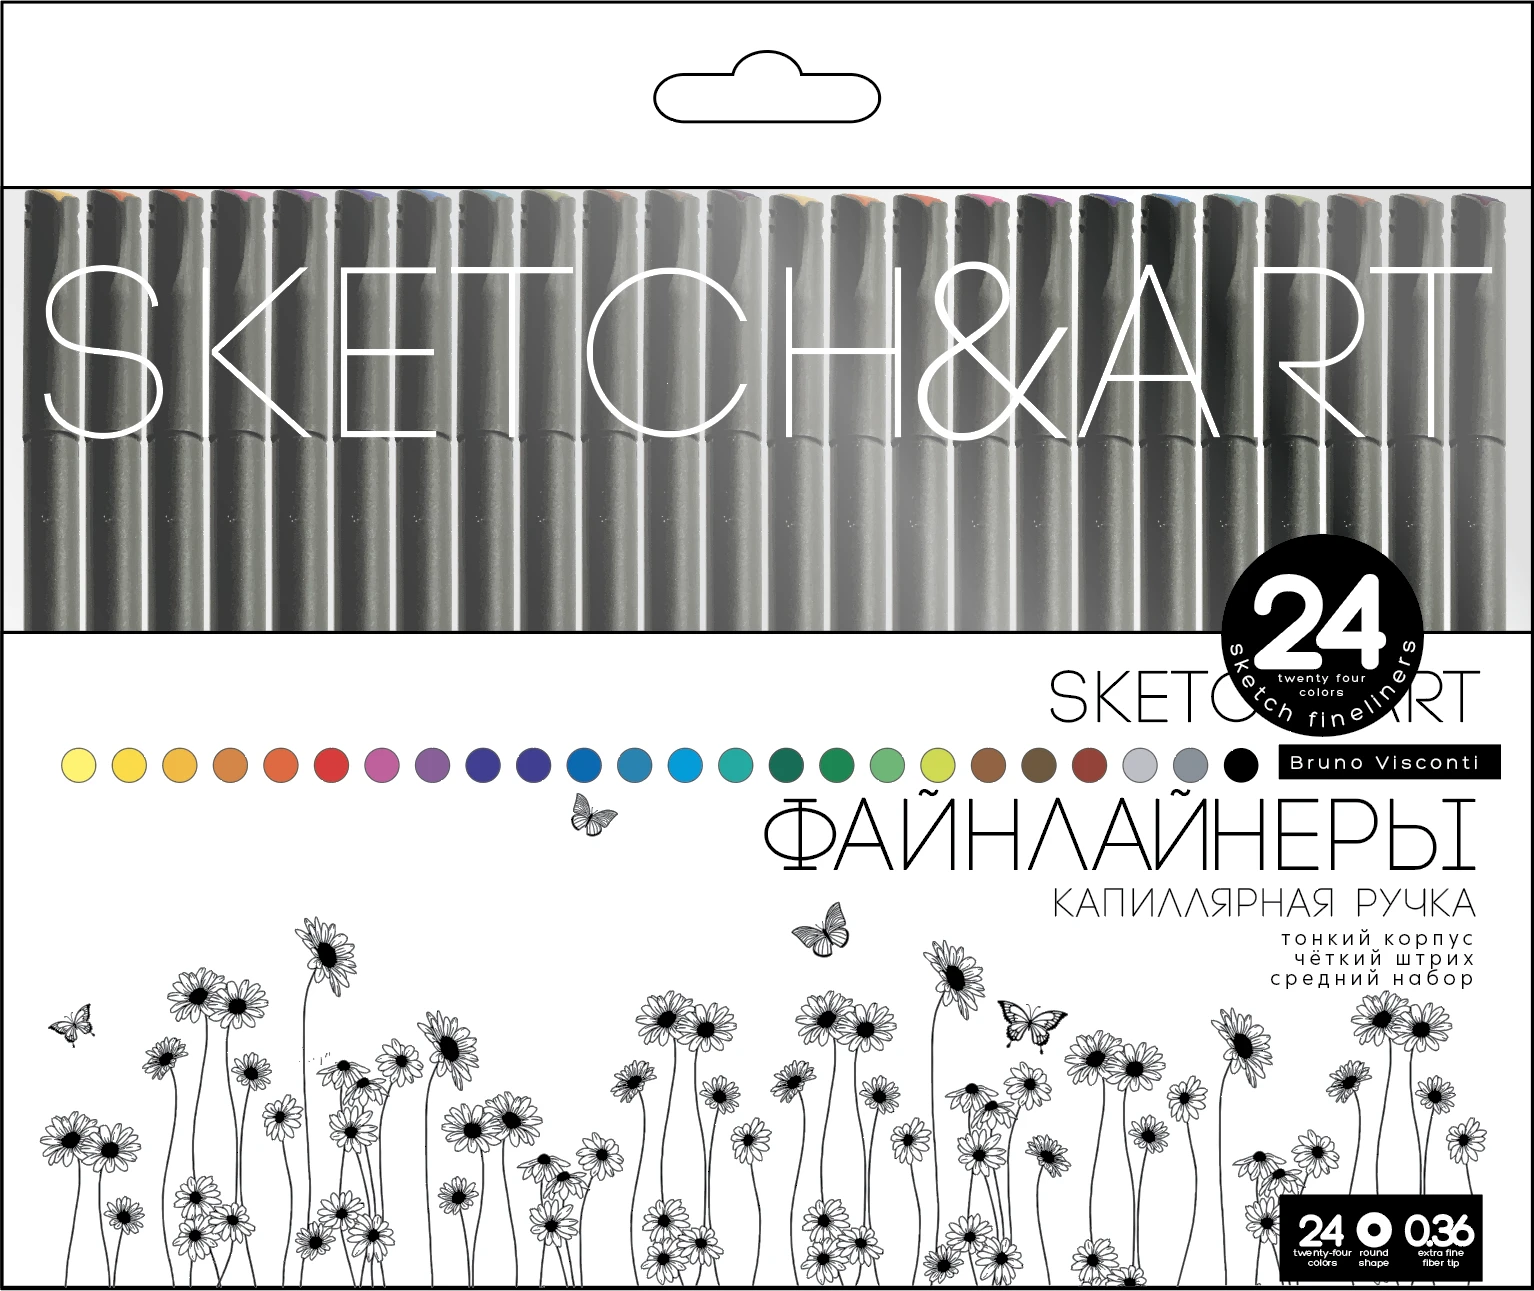 НАБОР СКЕТЧ - ЛИНЕРОВ "SKETCH&ART. BLACK EDITION" 0.36 ММ, 24 ЦВ.